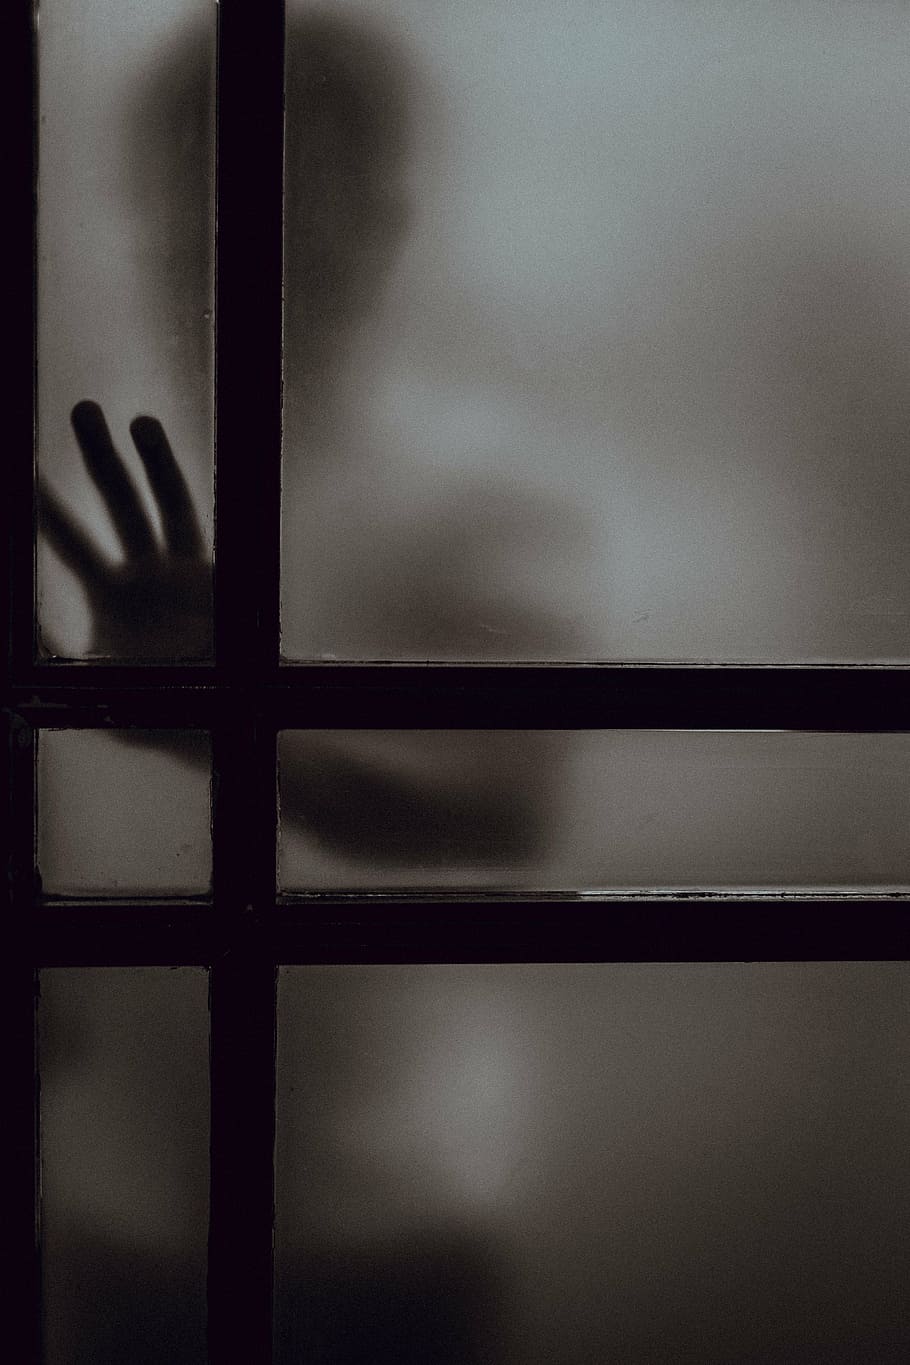 persona, colocación, mano, helado, panel de la puerta, oscuro, vidrio, ventana, sombra, silueta